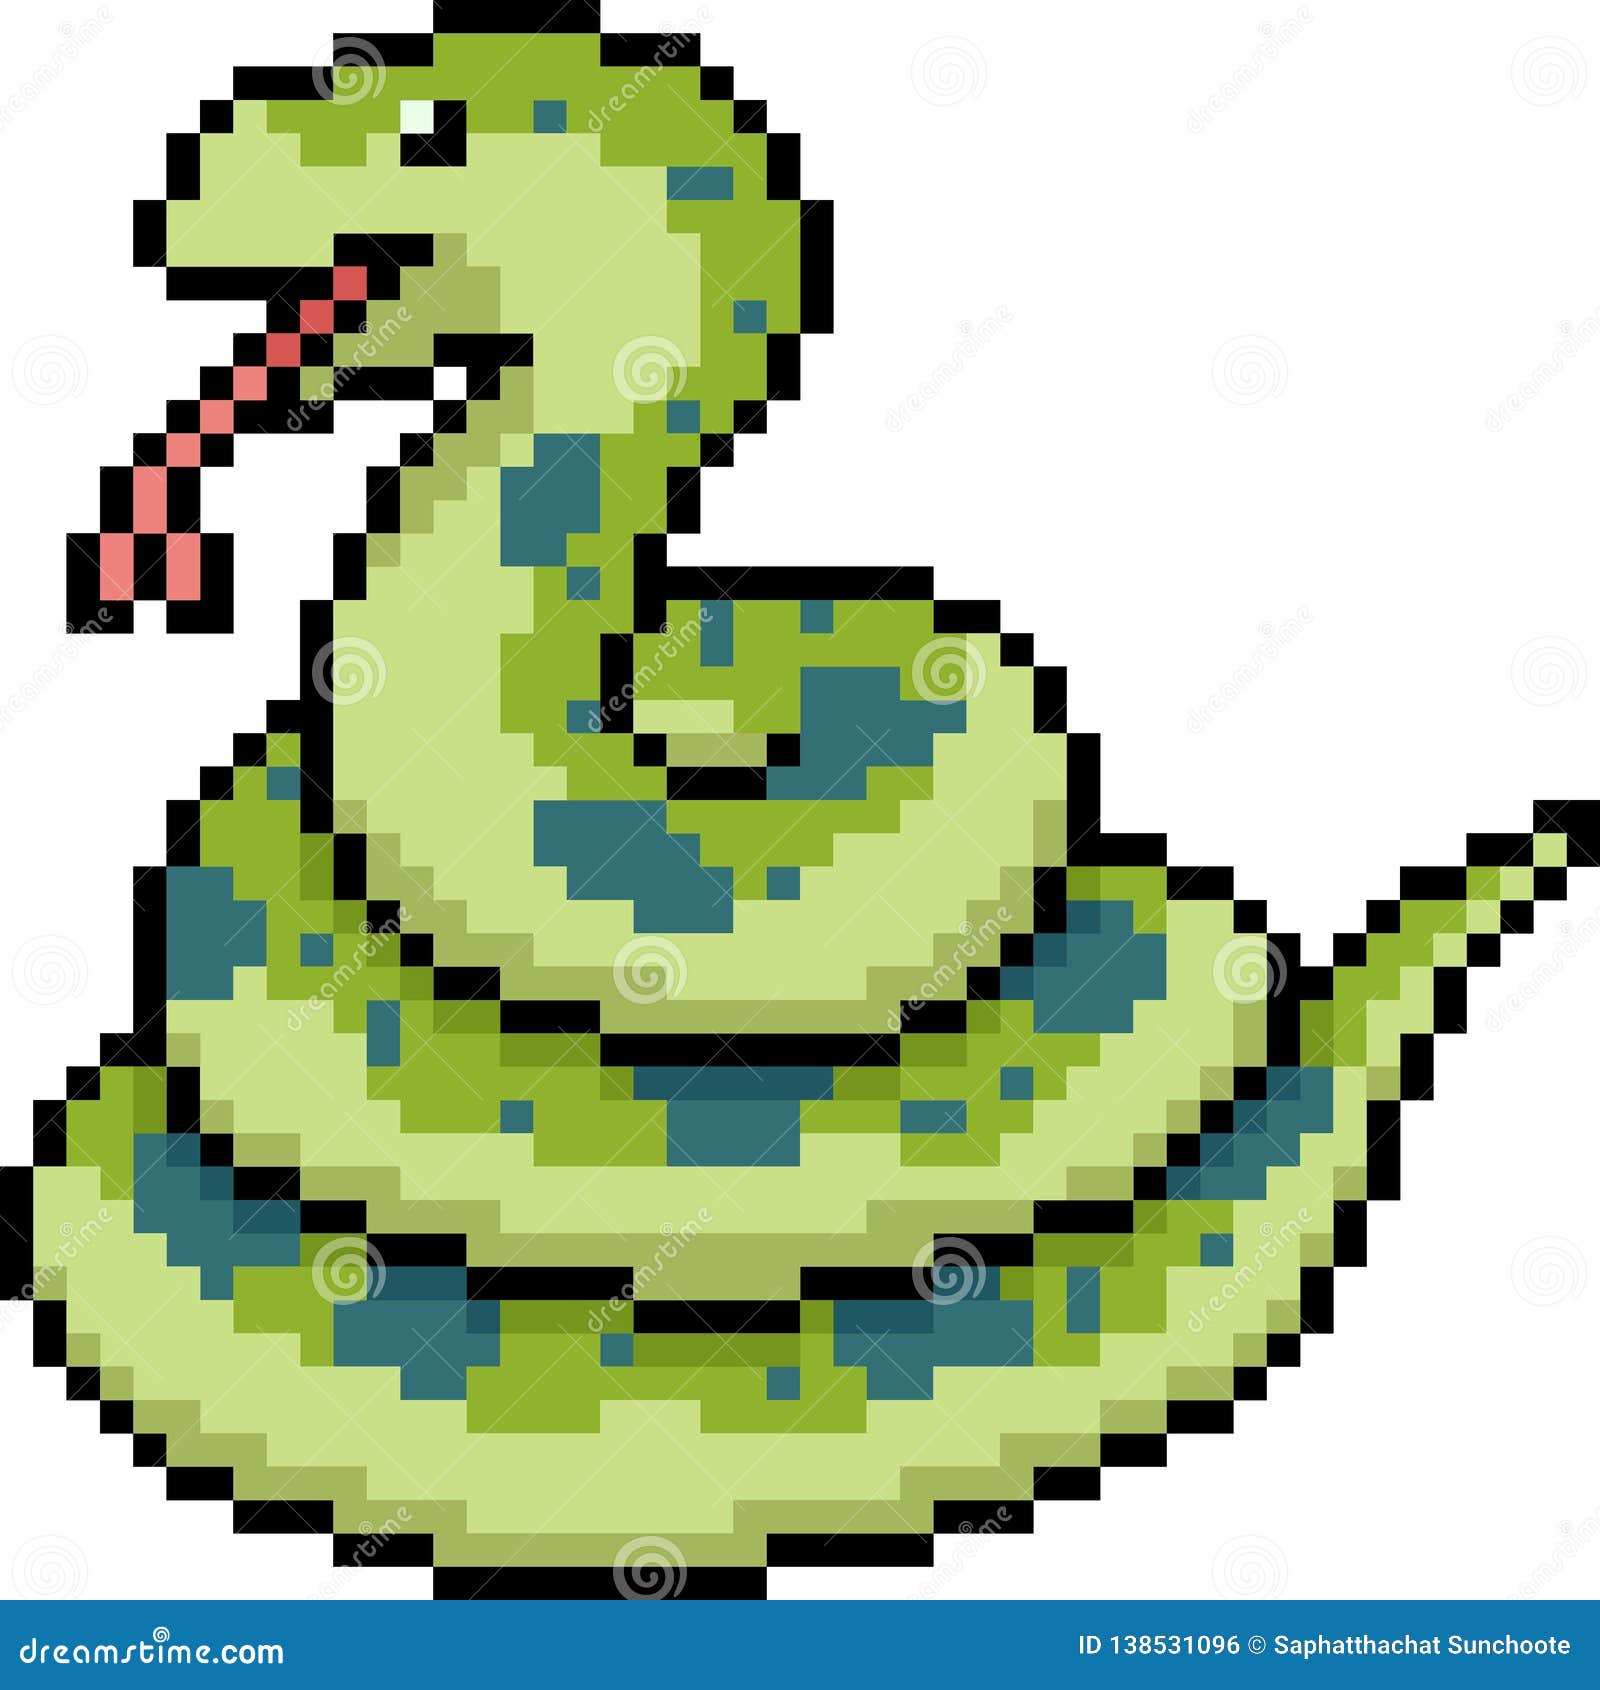 snake pixel art grid Snake pixel - Pixel Art Grid